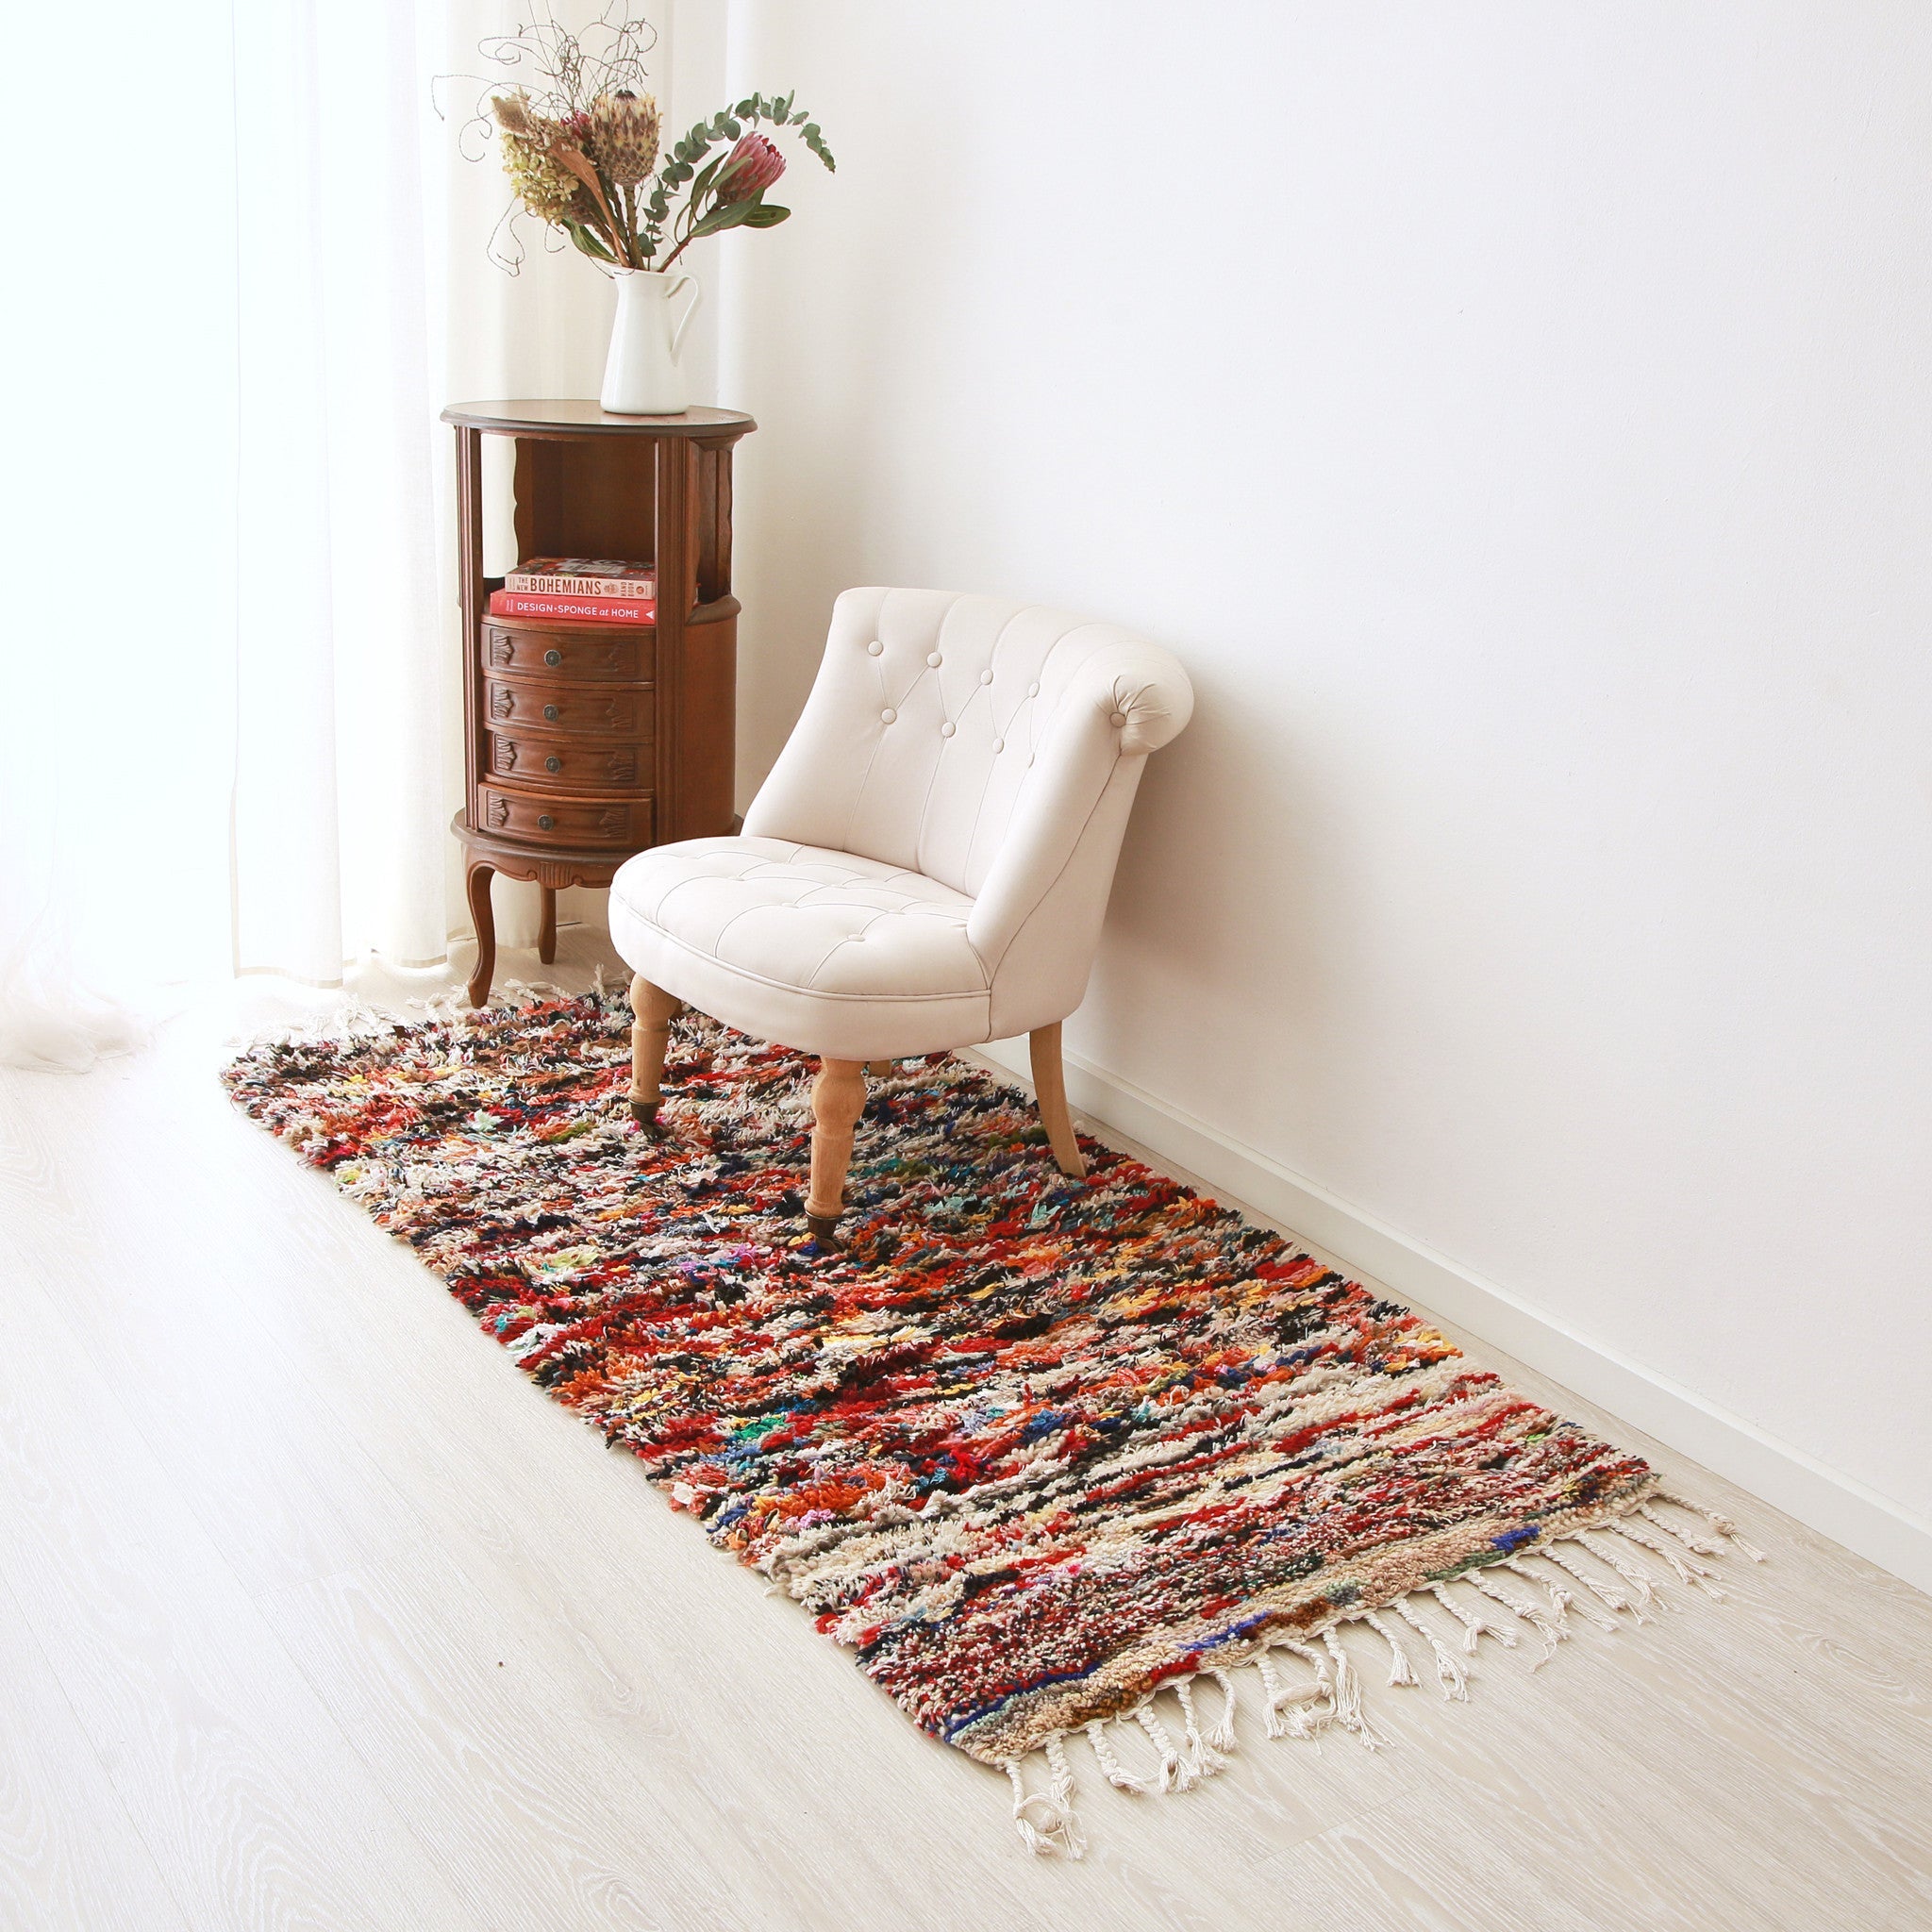 tappeto boucherouite realizzato con avanzi di tessuti e di filati di diversi colori sul pavimento con una poltrona bianca sopra